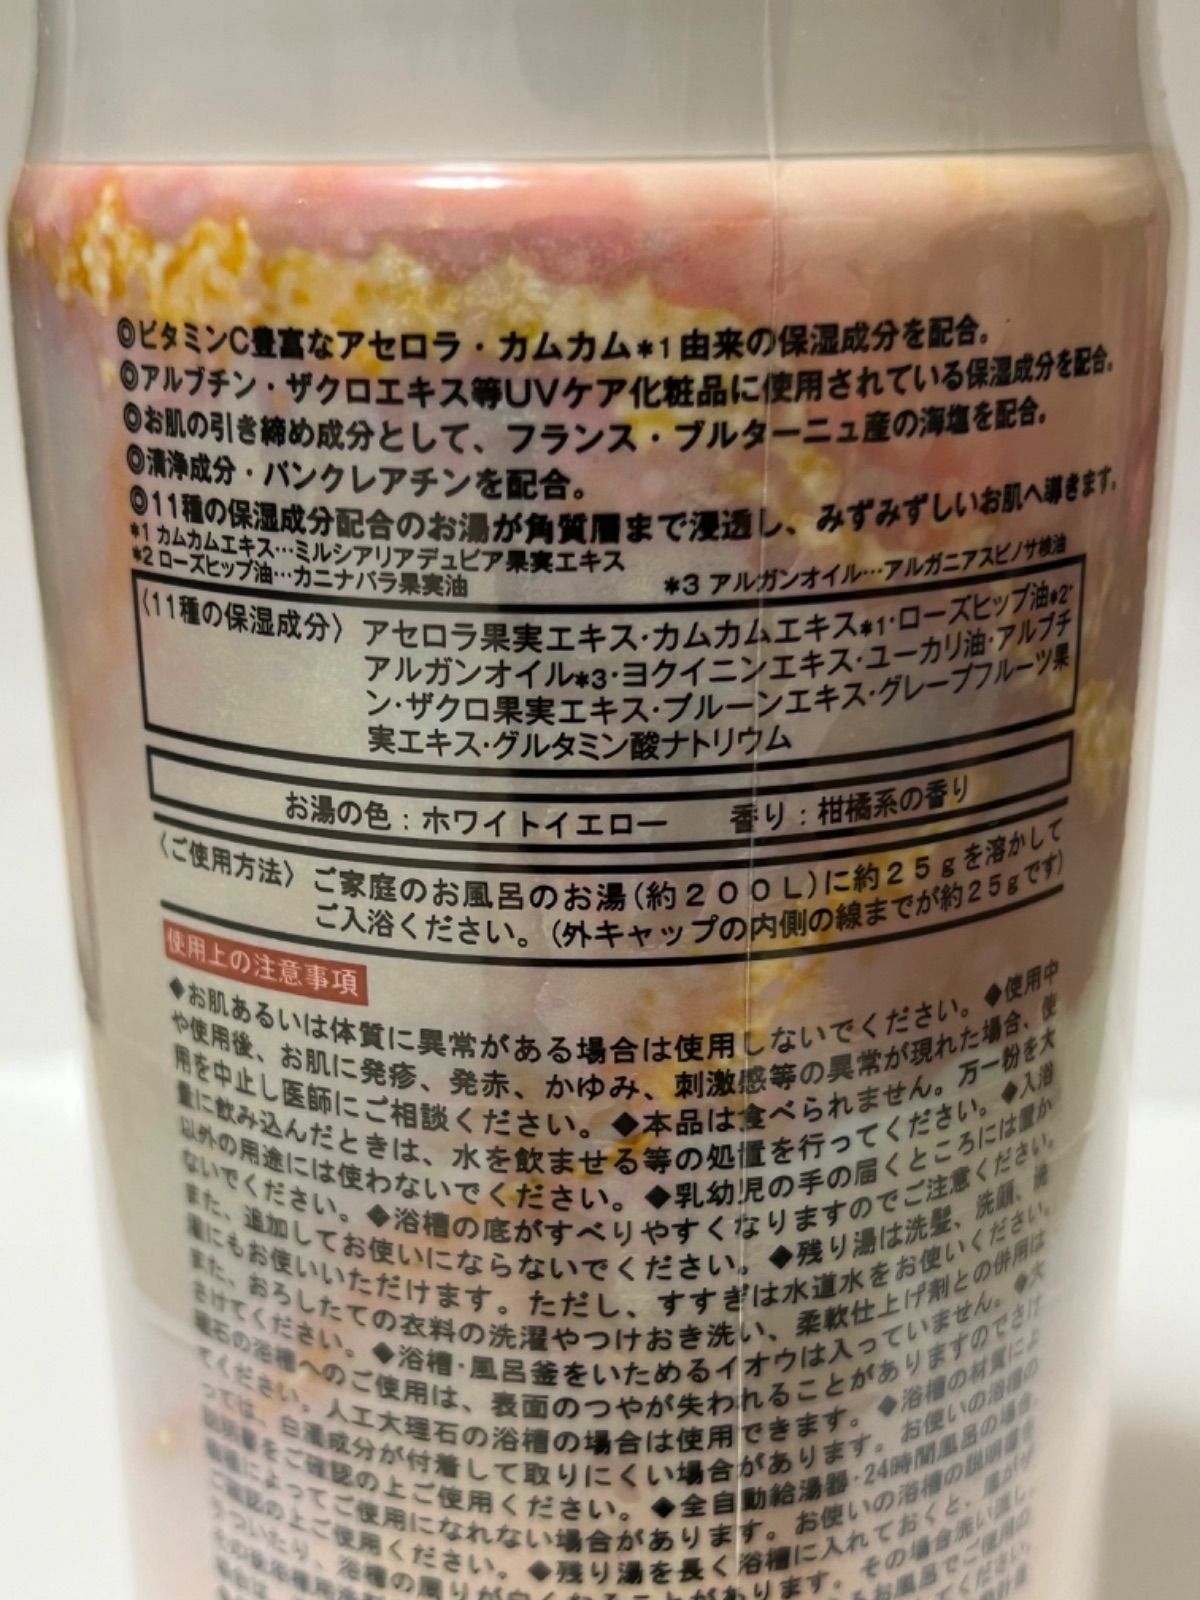 【未開封品】バスソルト【エクスプレスパウダーバスソルト】 11種の保湿成分入り 柑橘系の香り 1,000g